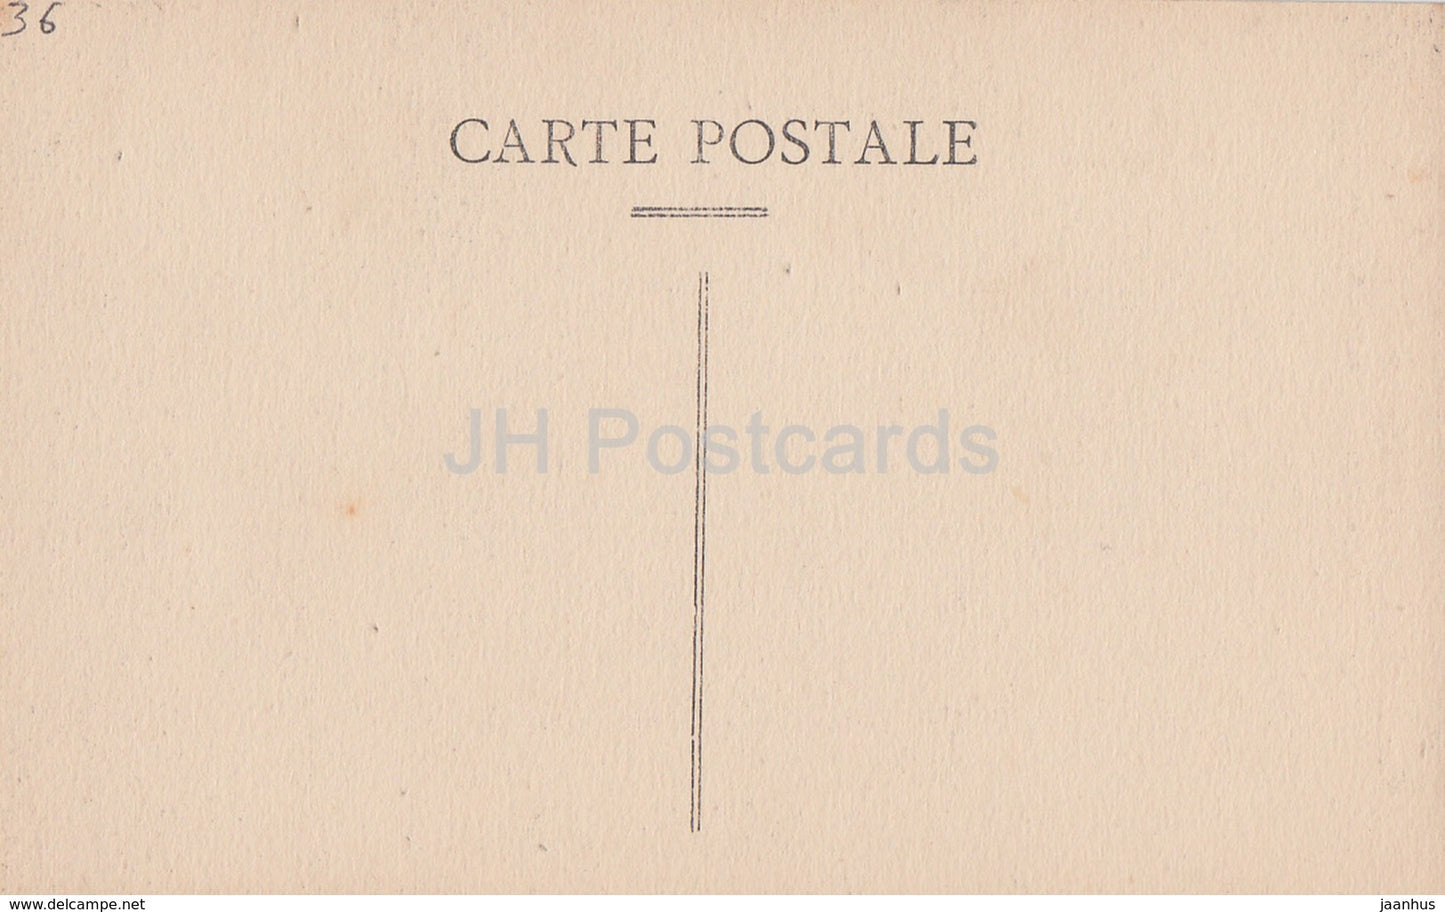 Environs de Chateauroux - La Tour Jacques Coeur - Chateau de Diors - castle - 22 - old postcard - France - unused